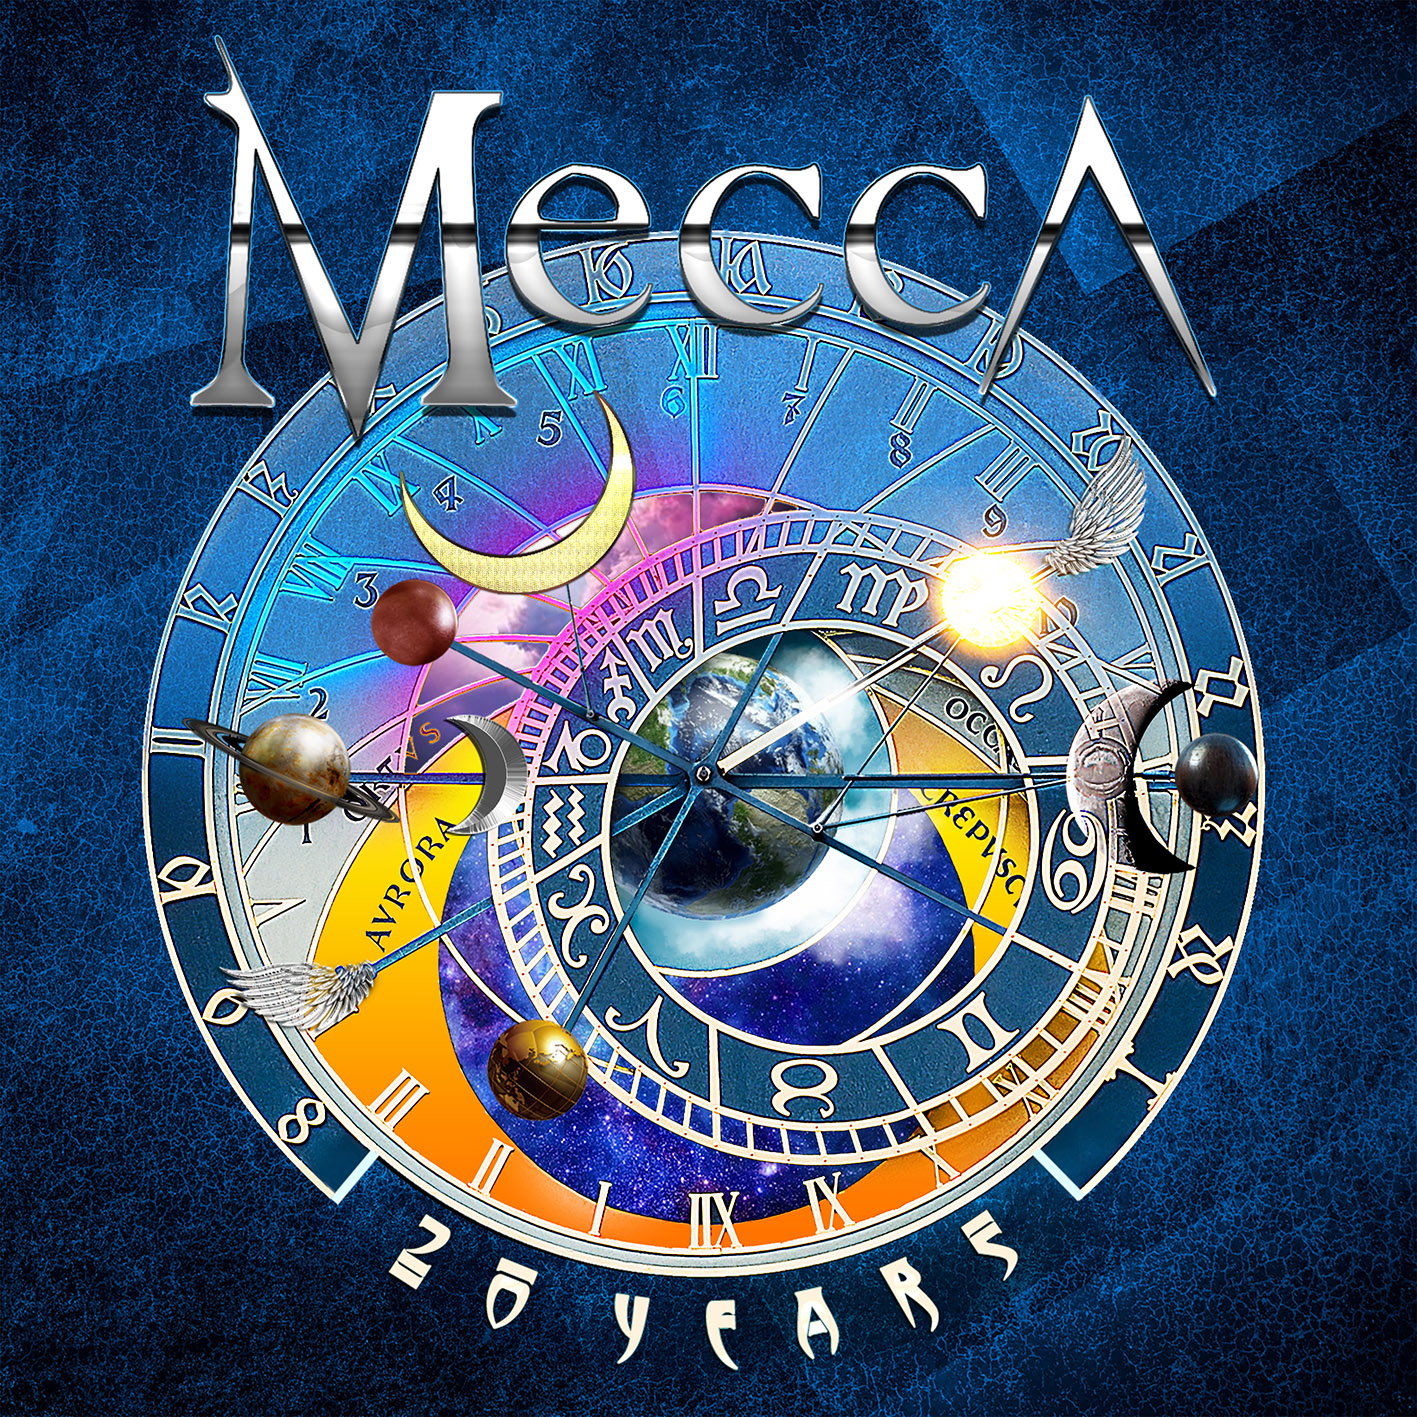 Mecca - 20 Years - 3xCD